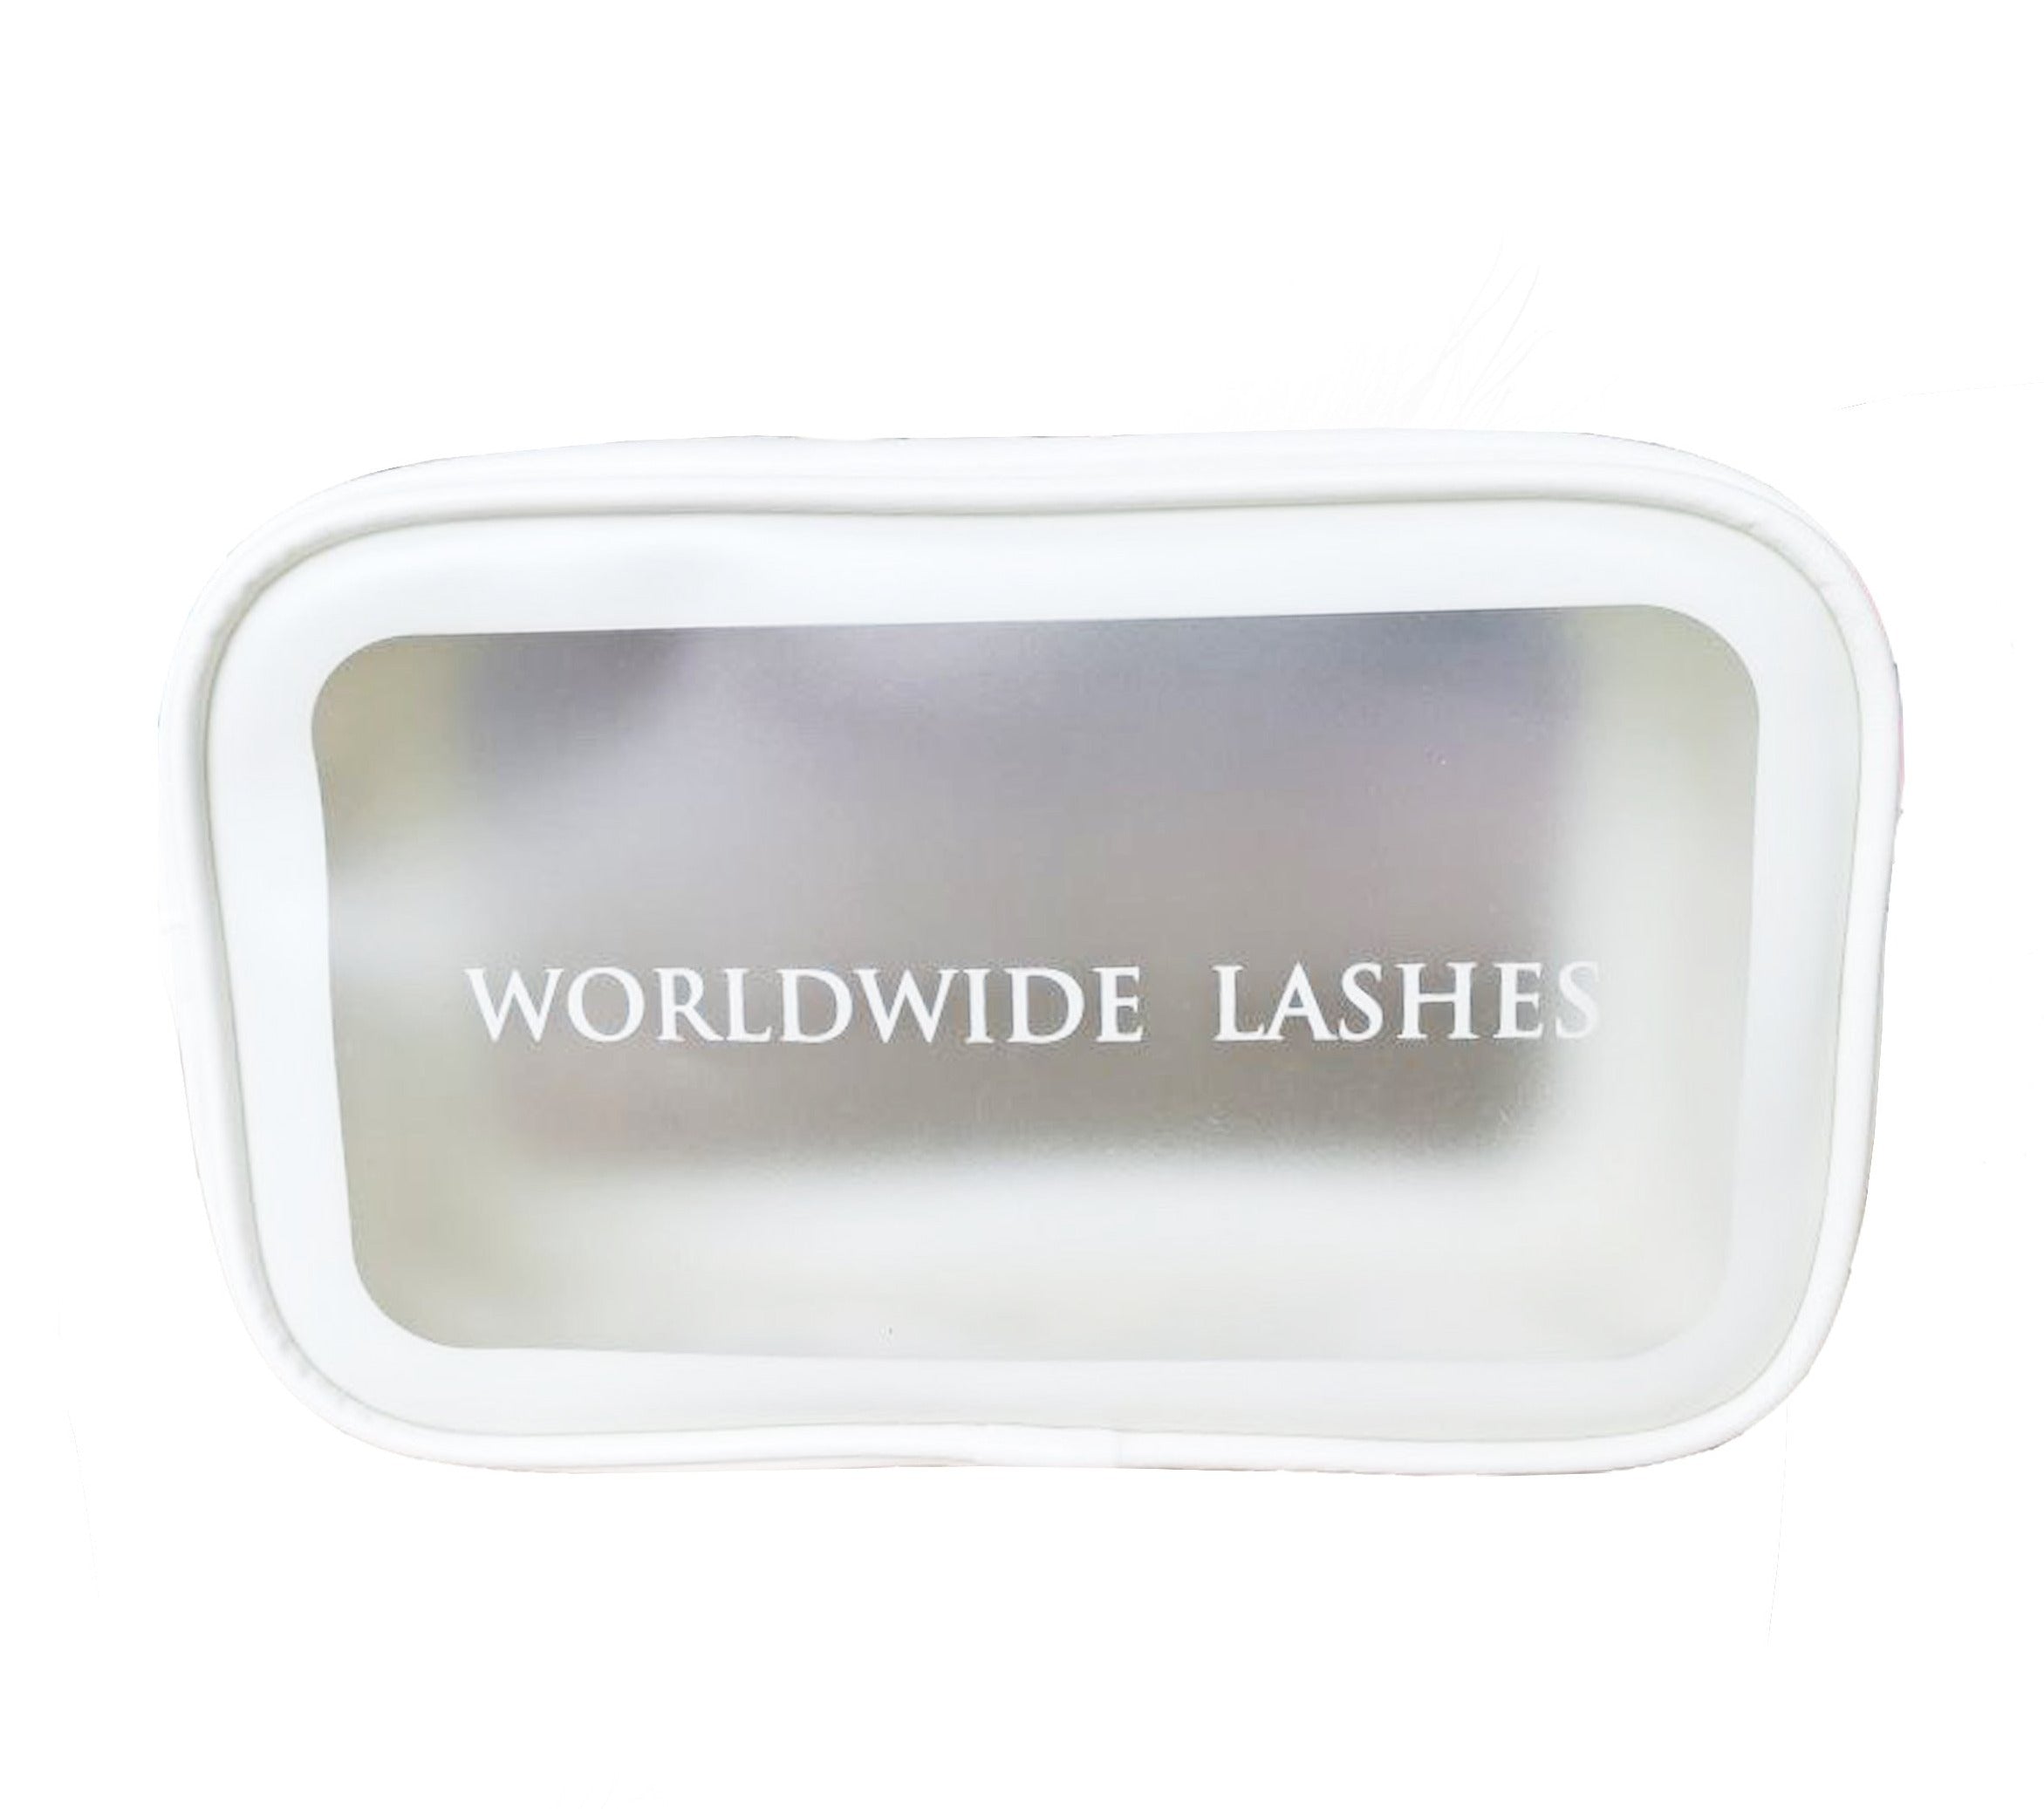 Worldwide Lashes Bag